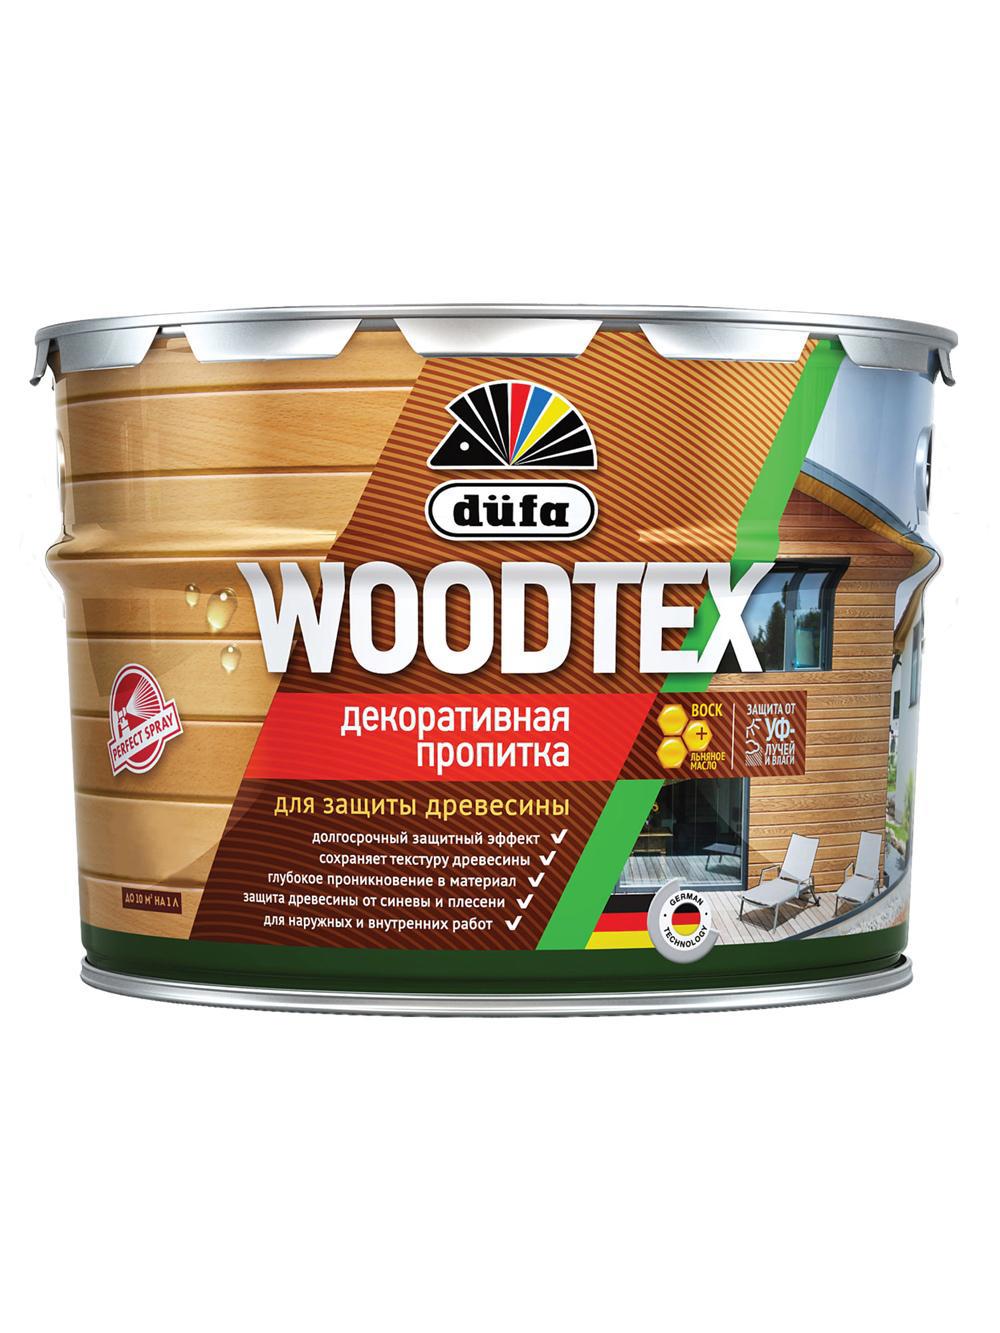 90194562 Пропитка декоративная для защиты древесины алкидная Woodtex дуб 3 л STLM-0128493 DUFA